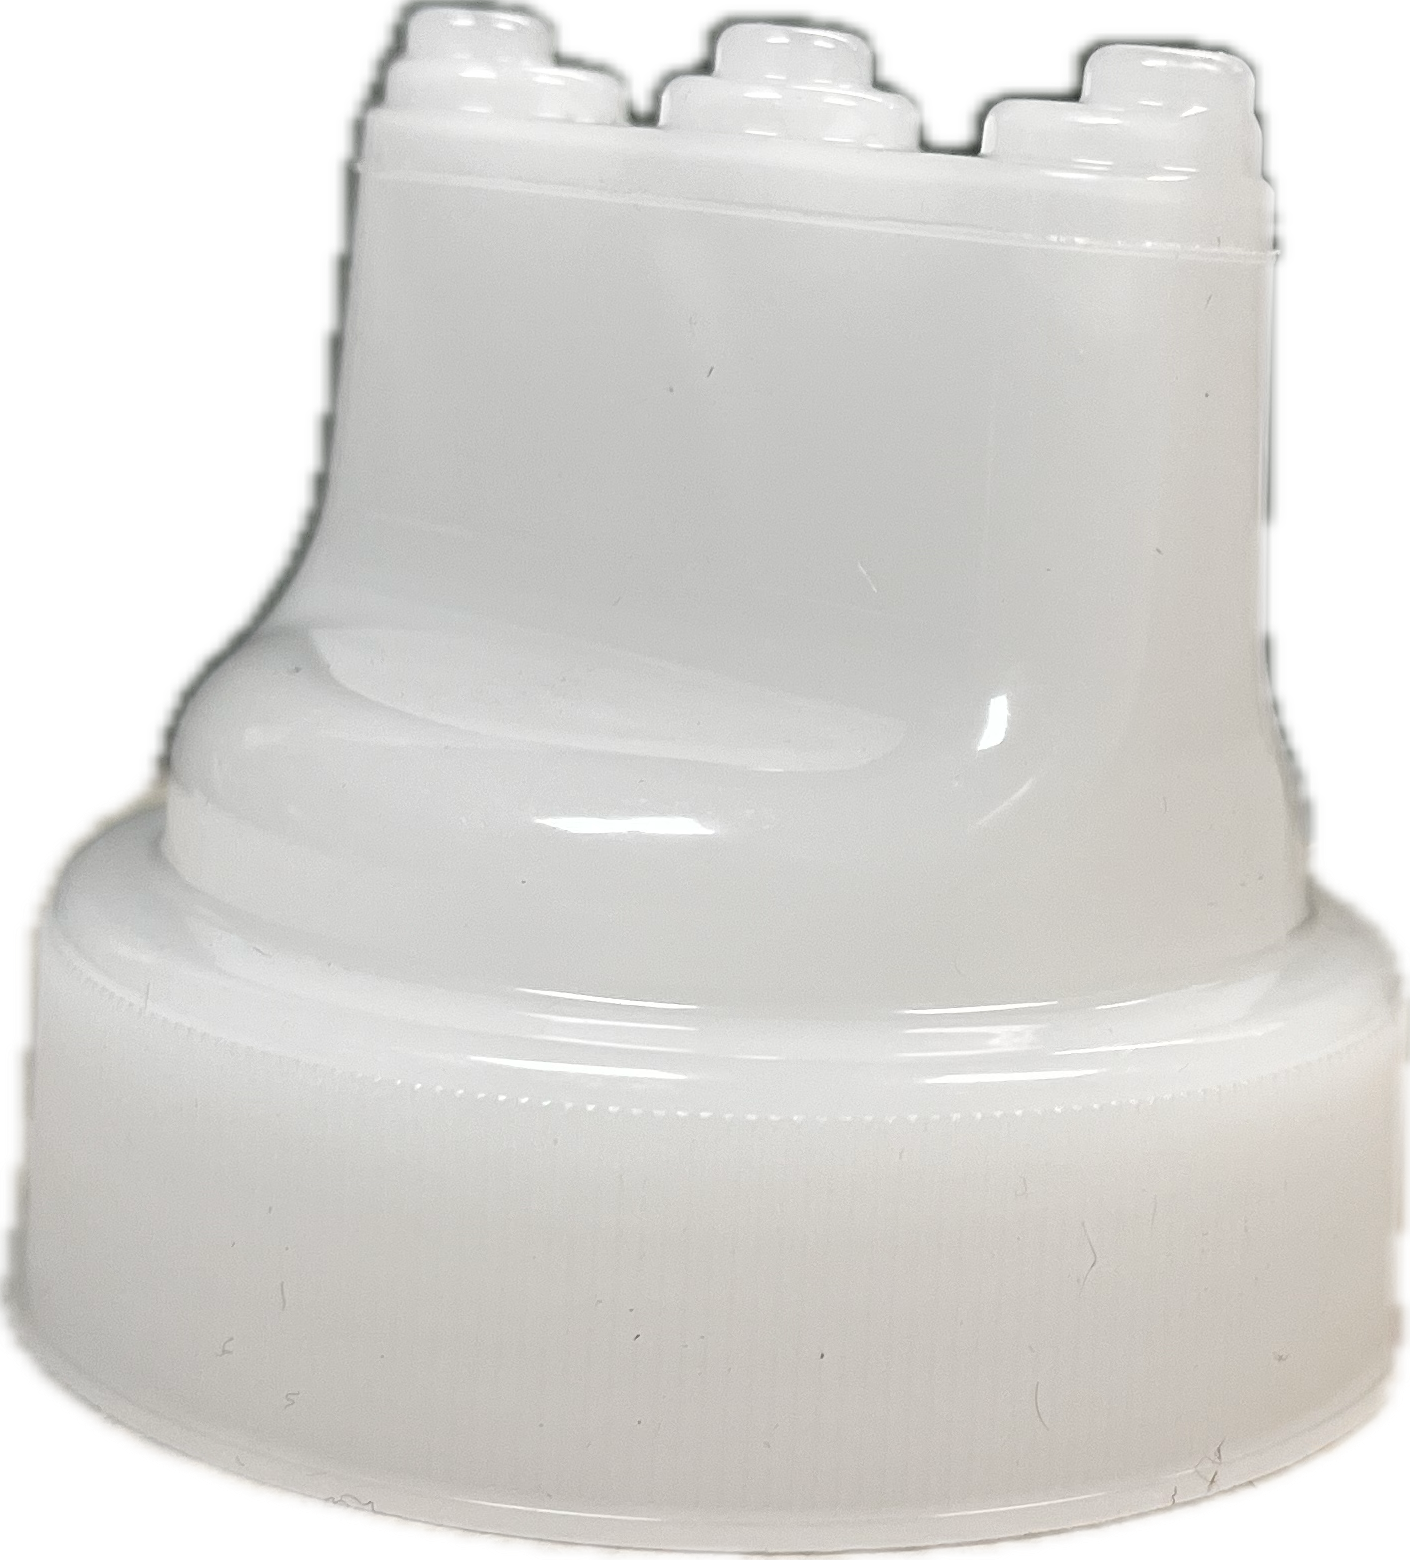 Tri-Tip Nugget Sauce Bottle lid